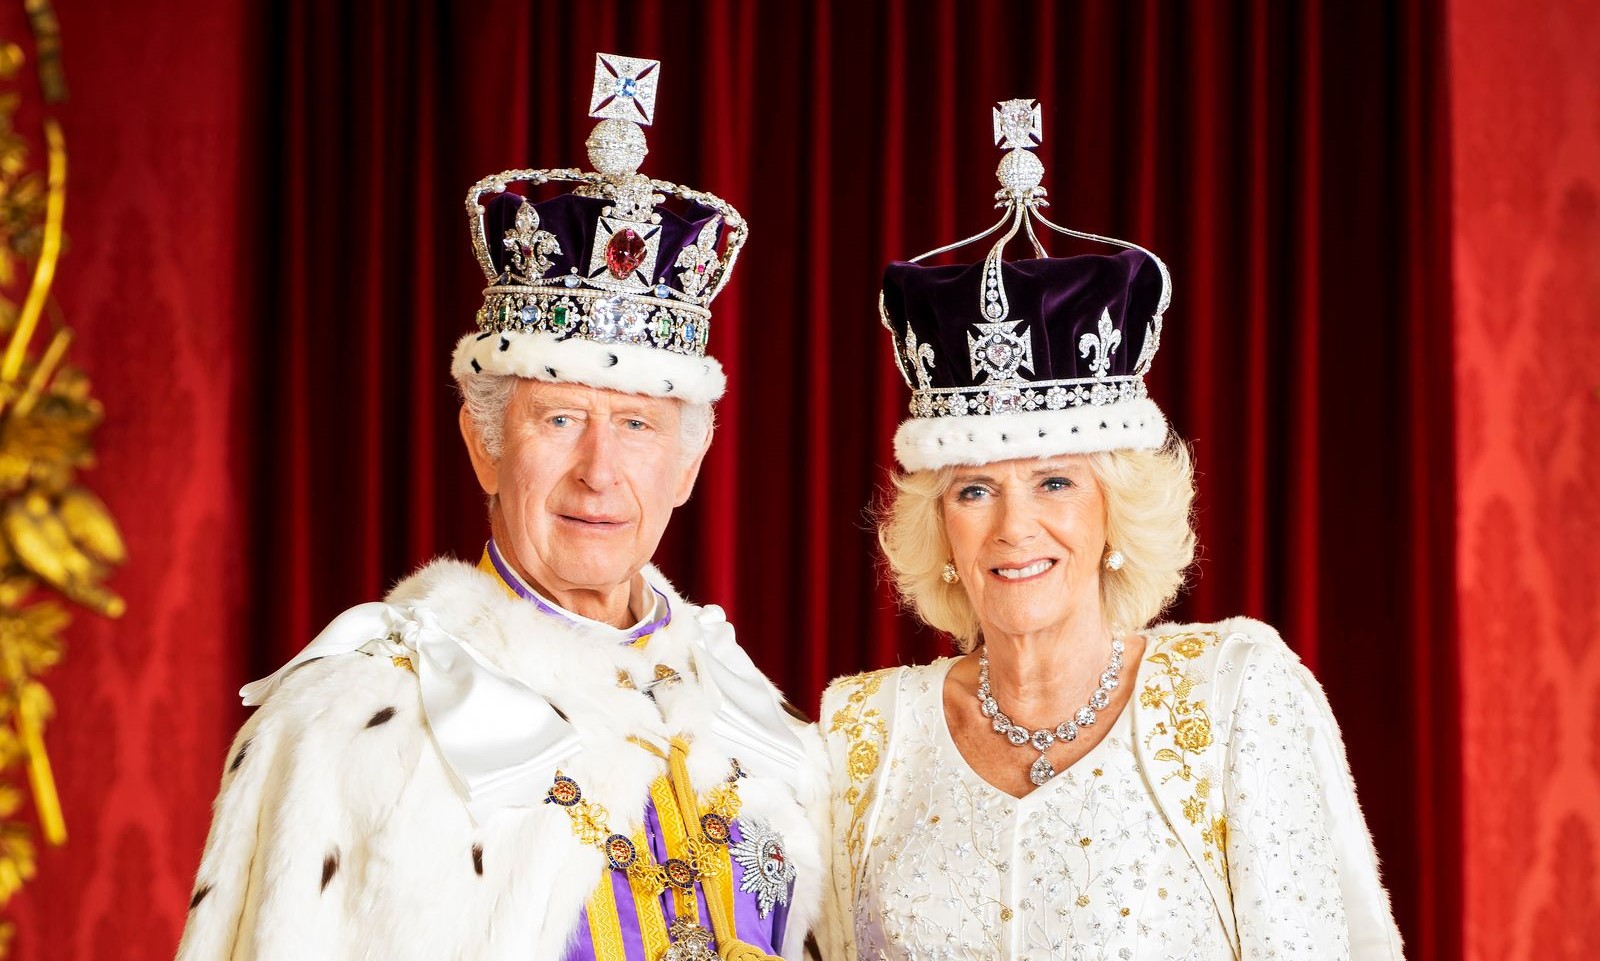 Kuningas Charles III ja kuningatar Camilla saivat kruununsa. Camilla ei ole voittanut kaikkien sympatioita puolelleen, mutta ehkä kansa viimein hyväksyy hänen paikkansa kuninkaan rinnalla. © MV-photos